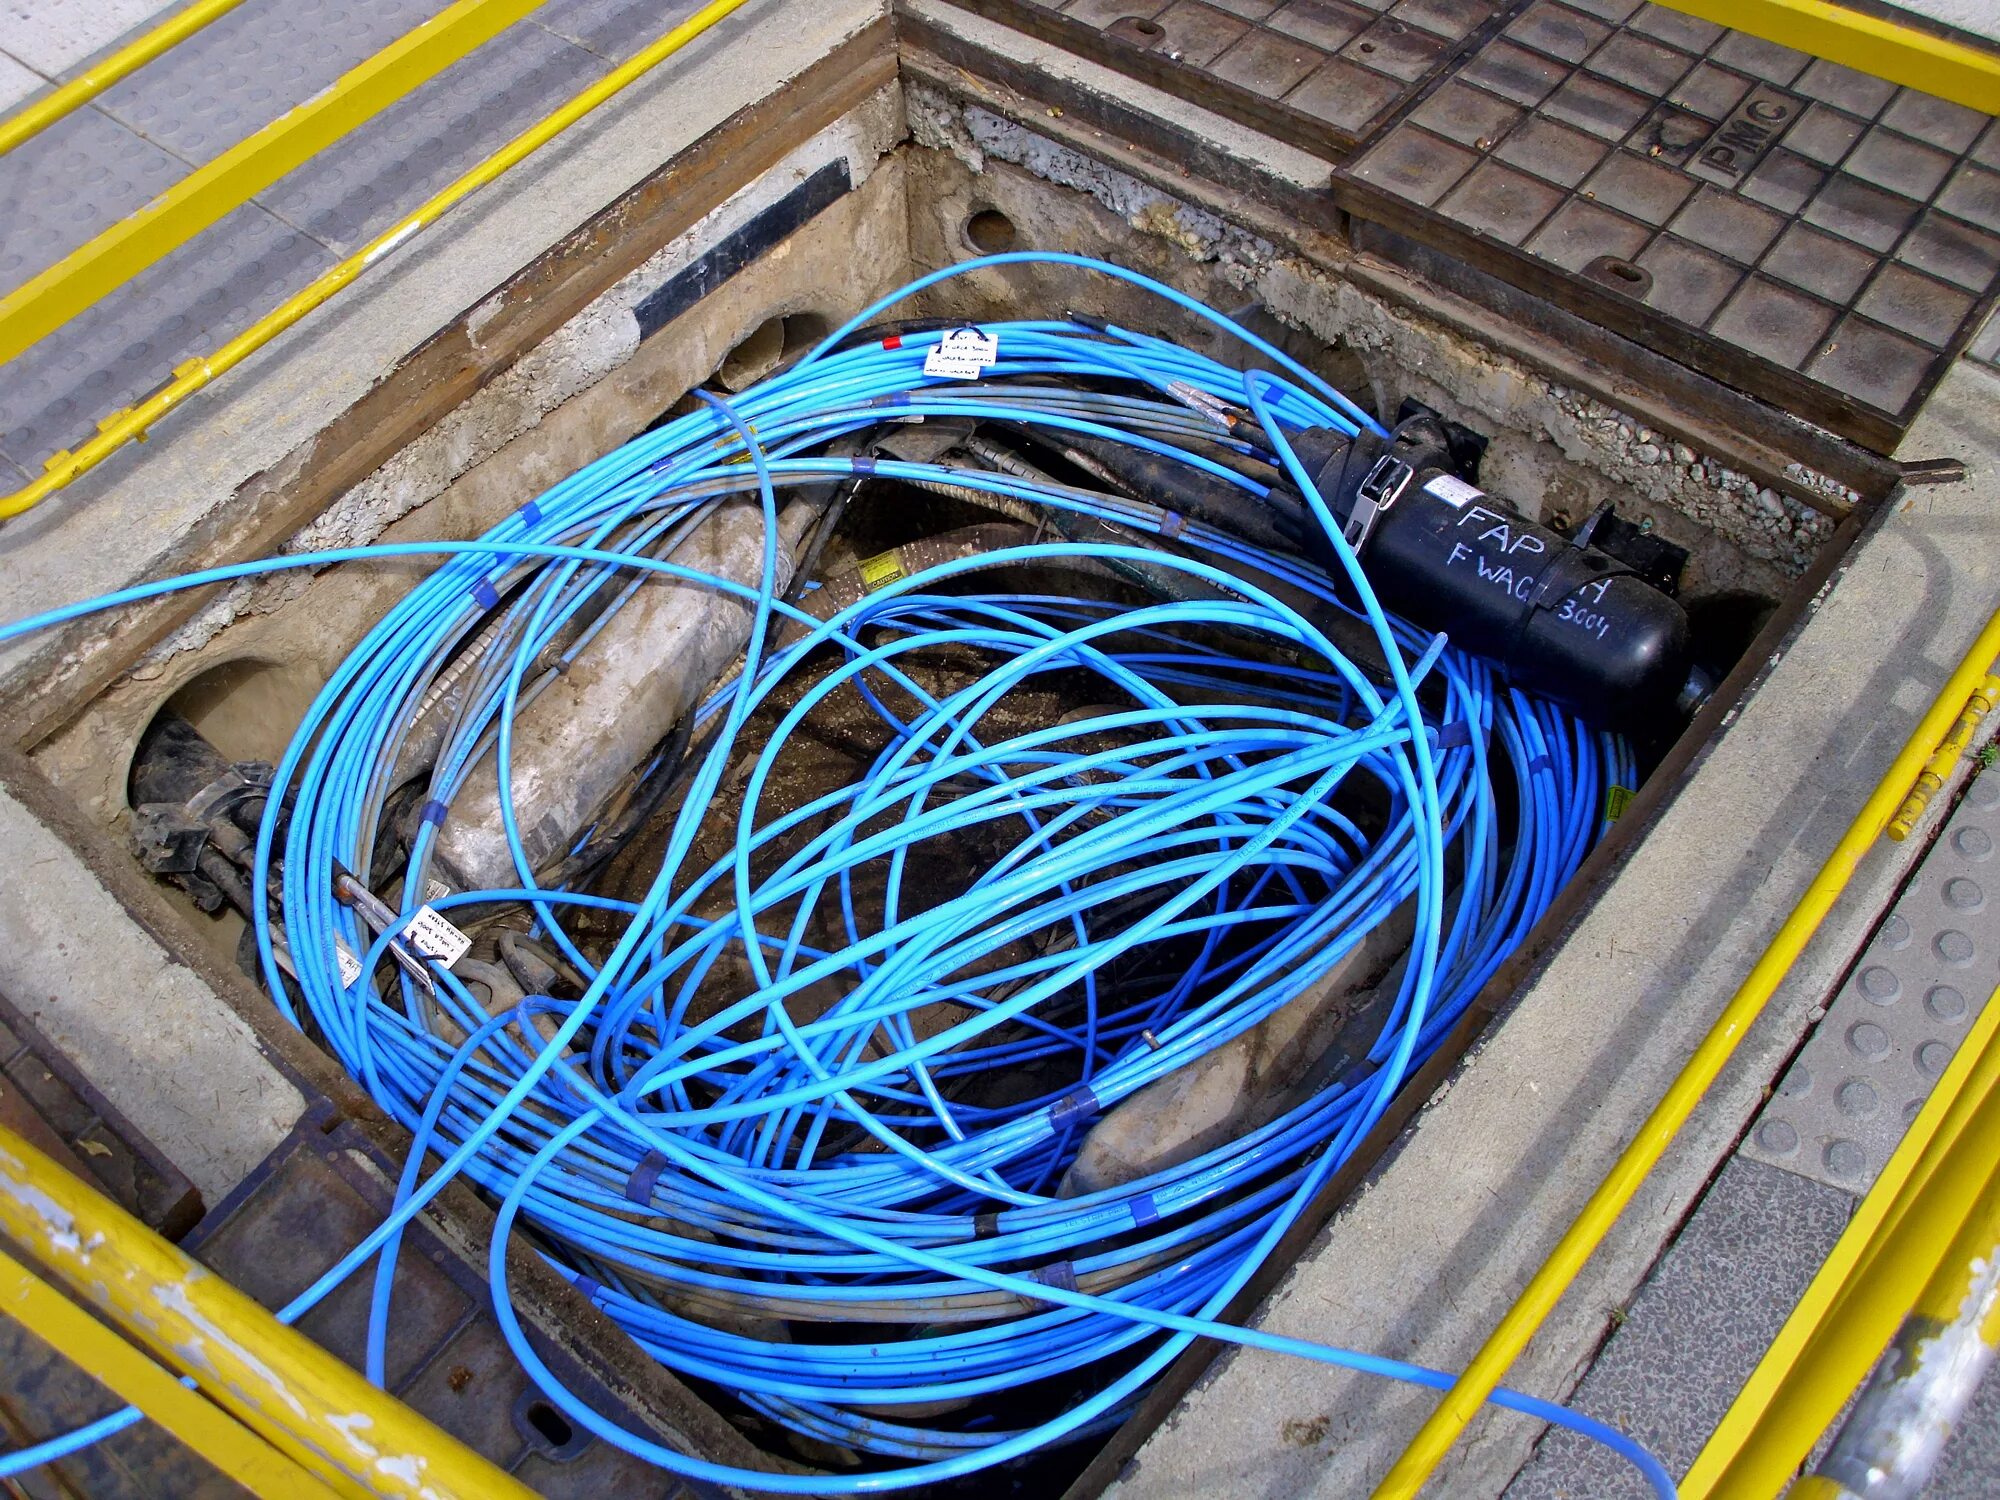 Прокладка кабельных линий связи. Волоконно-оптический кабель ВОЛС. Магистральный кабель ВОЛС. Прокладка ВОЛС В кабельной канализации. Волоконно-оптические линии связи (ВОЛС).